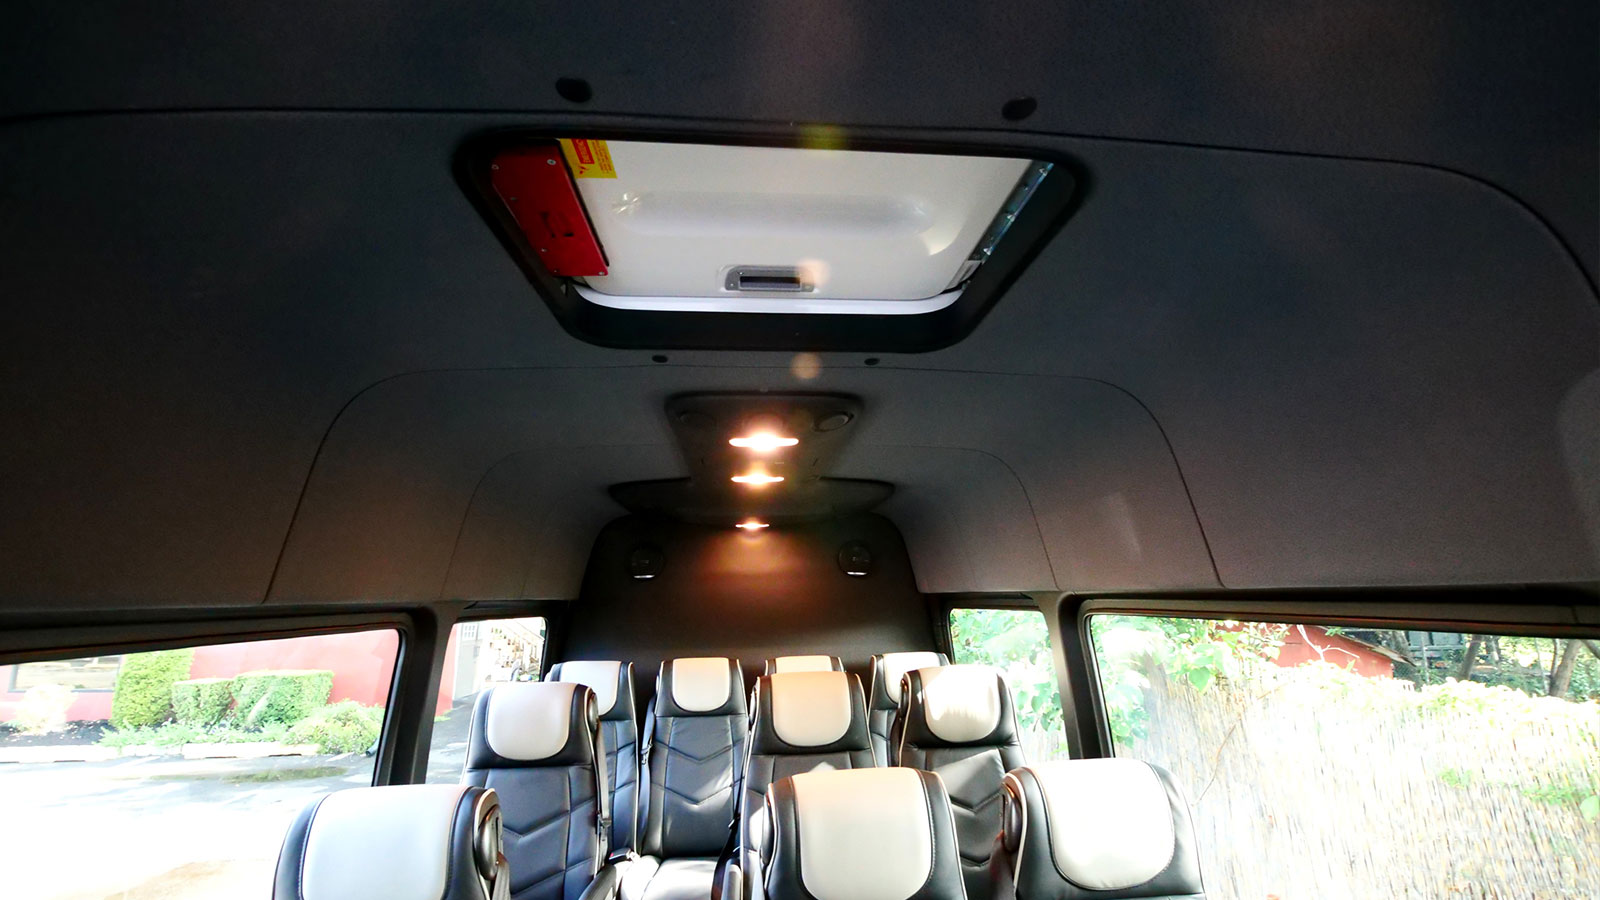 HQ – 16 Passengers Plug Door Shuttle Bus - SOLD